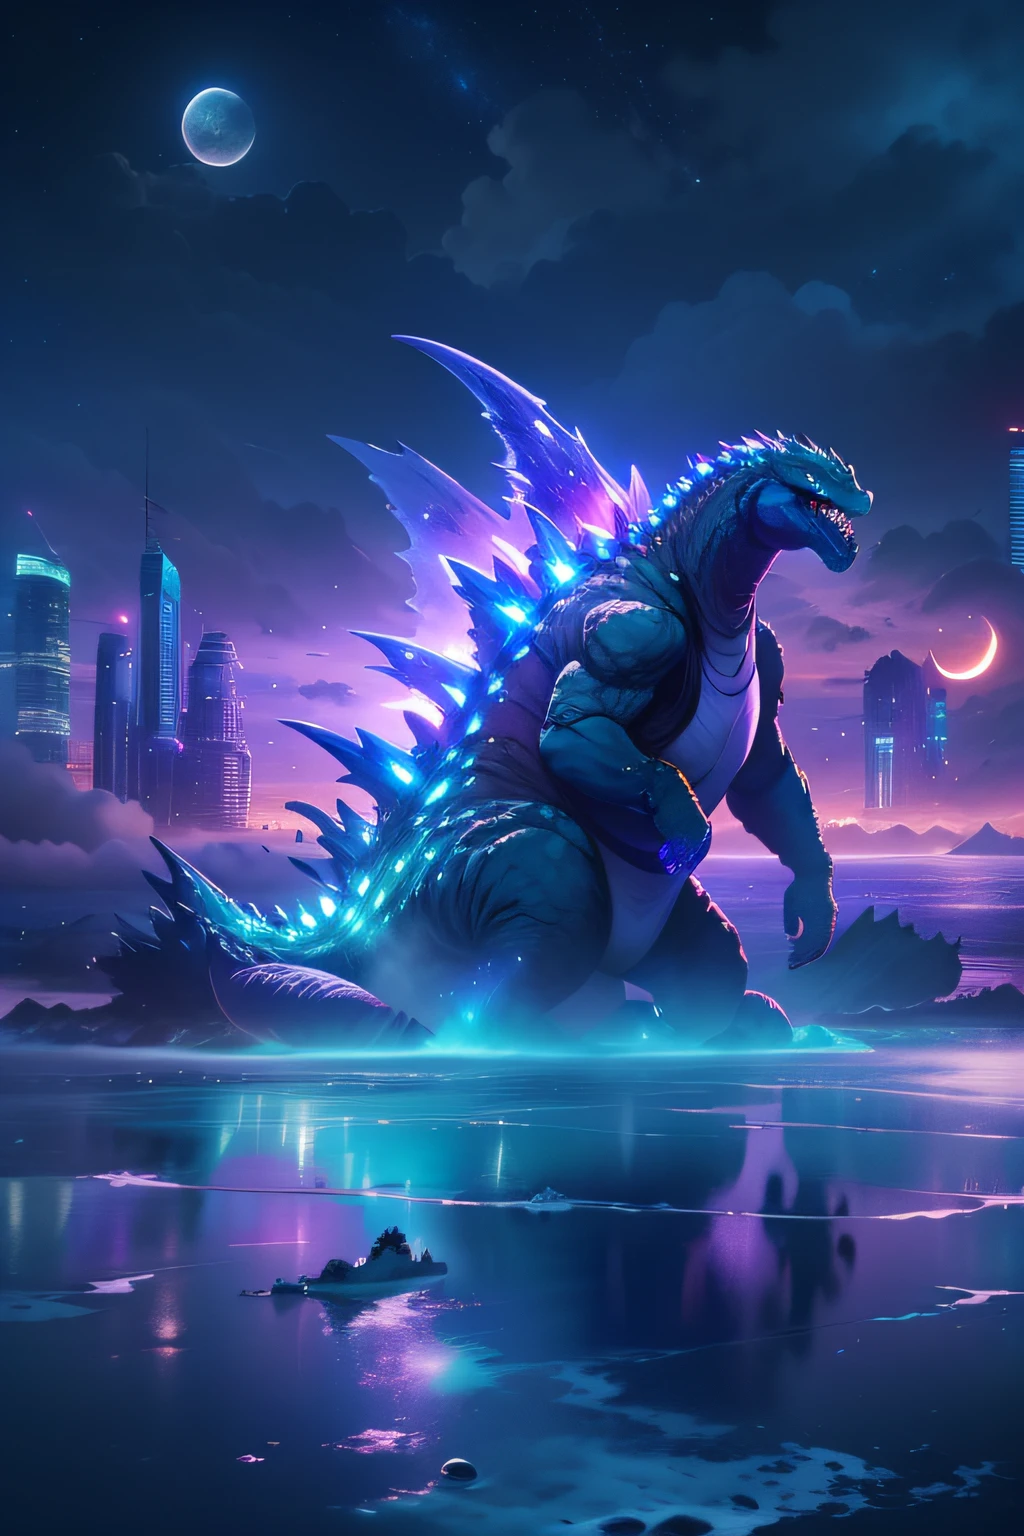 Godzilla - Die wunderbare Welt der Götter , der Ozean，Der Hintergrund ist eine futuristische Stadt, Sci-Fi-Stil, blau und violett, hell, Himmelshintergrund bei Nacht，Es gibt viele Sterne und einen Mond, der sich in zwei Teile teilt. Ultra-Fotorealismus